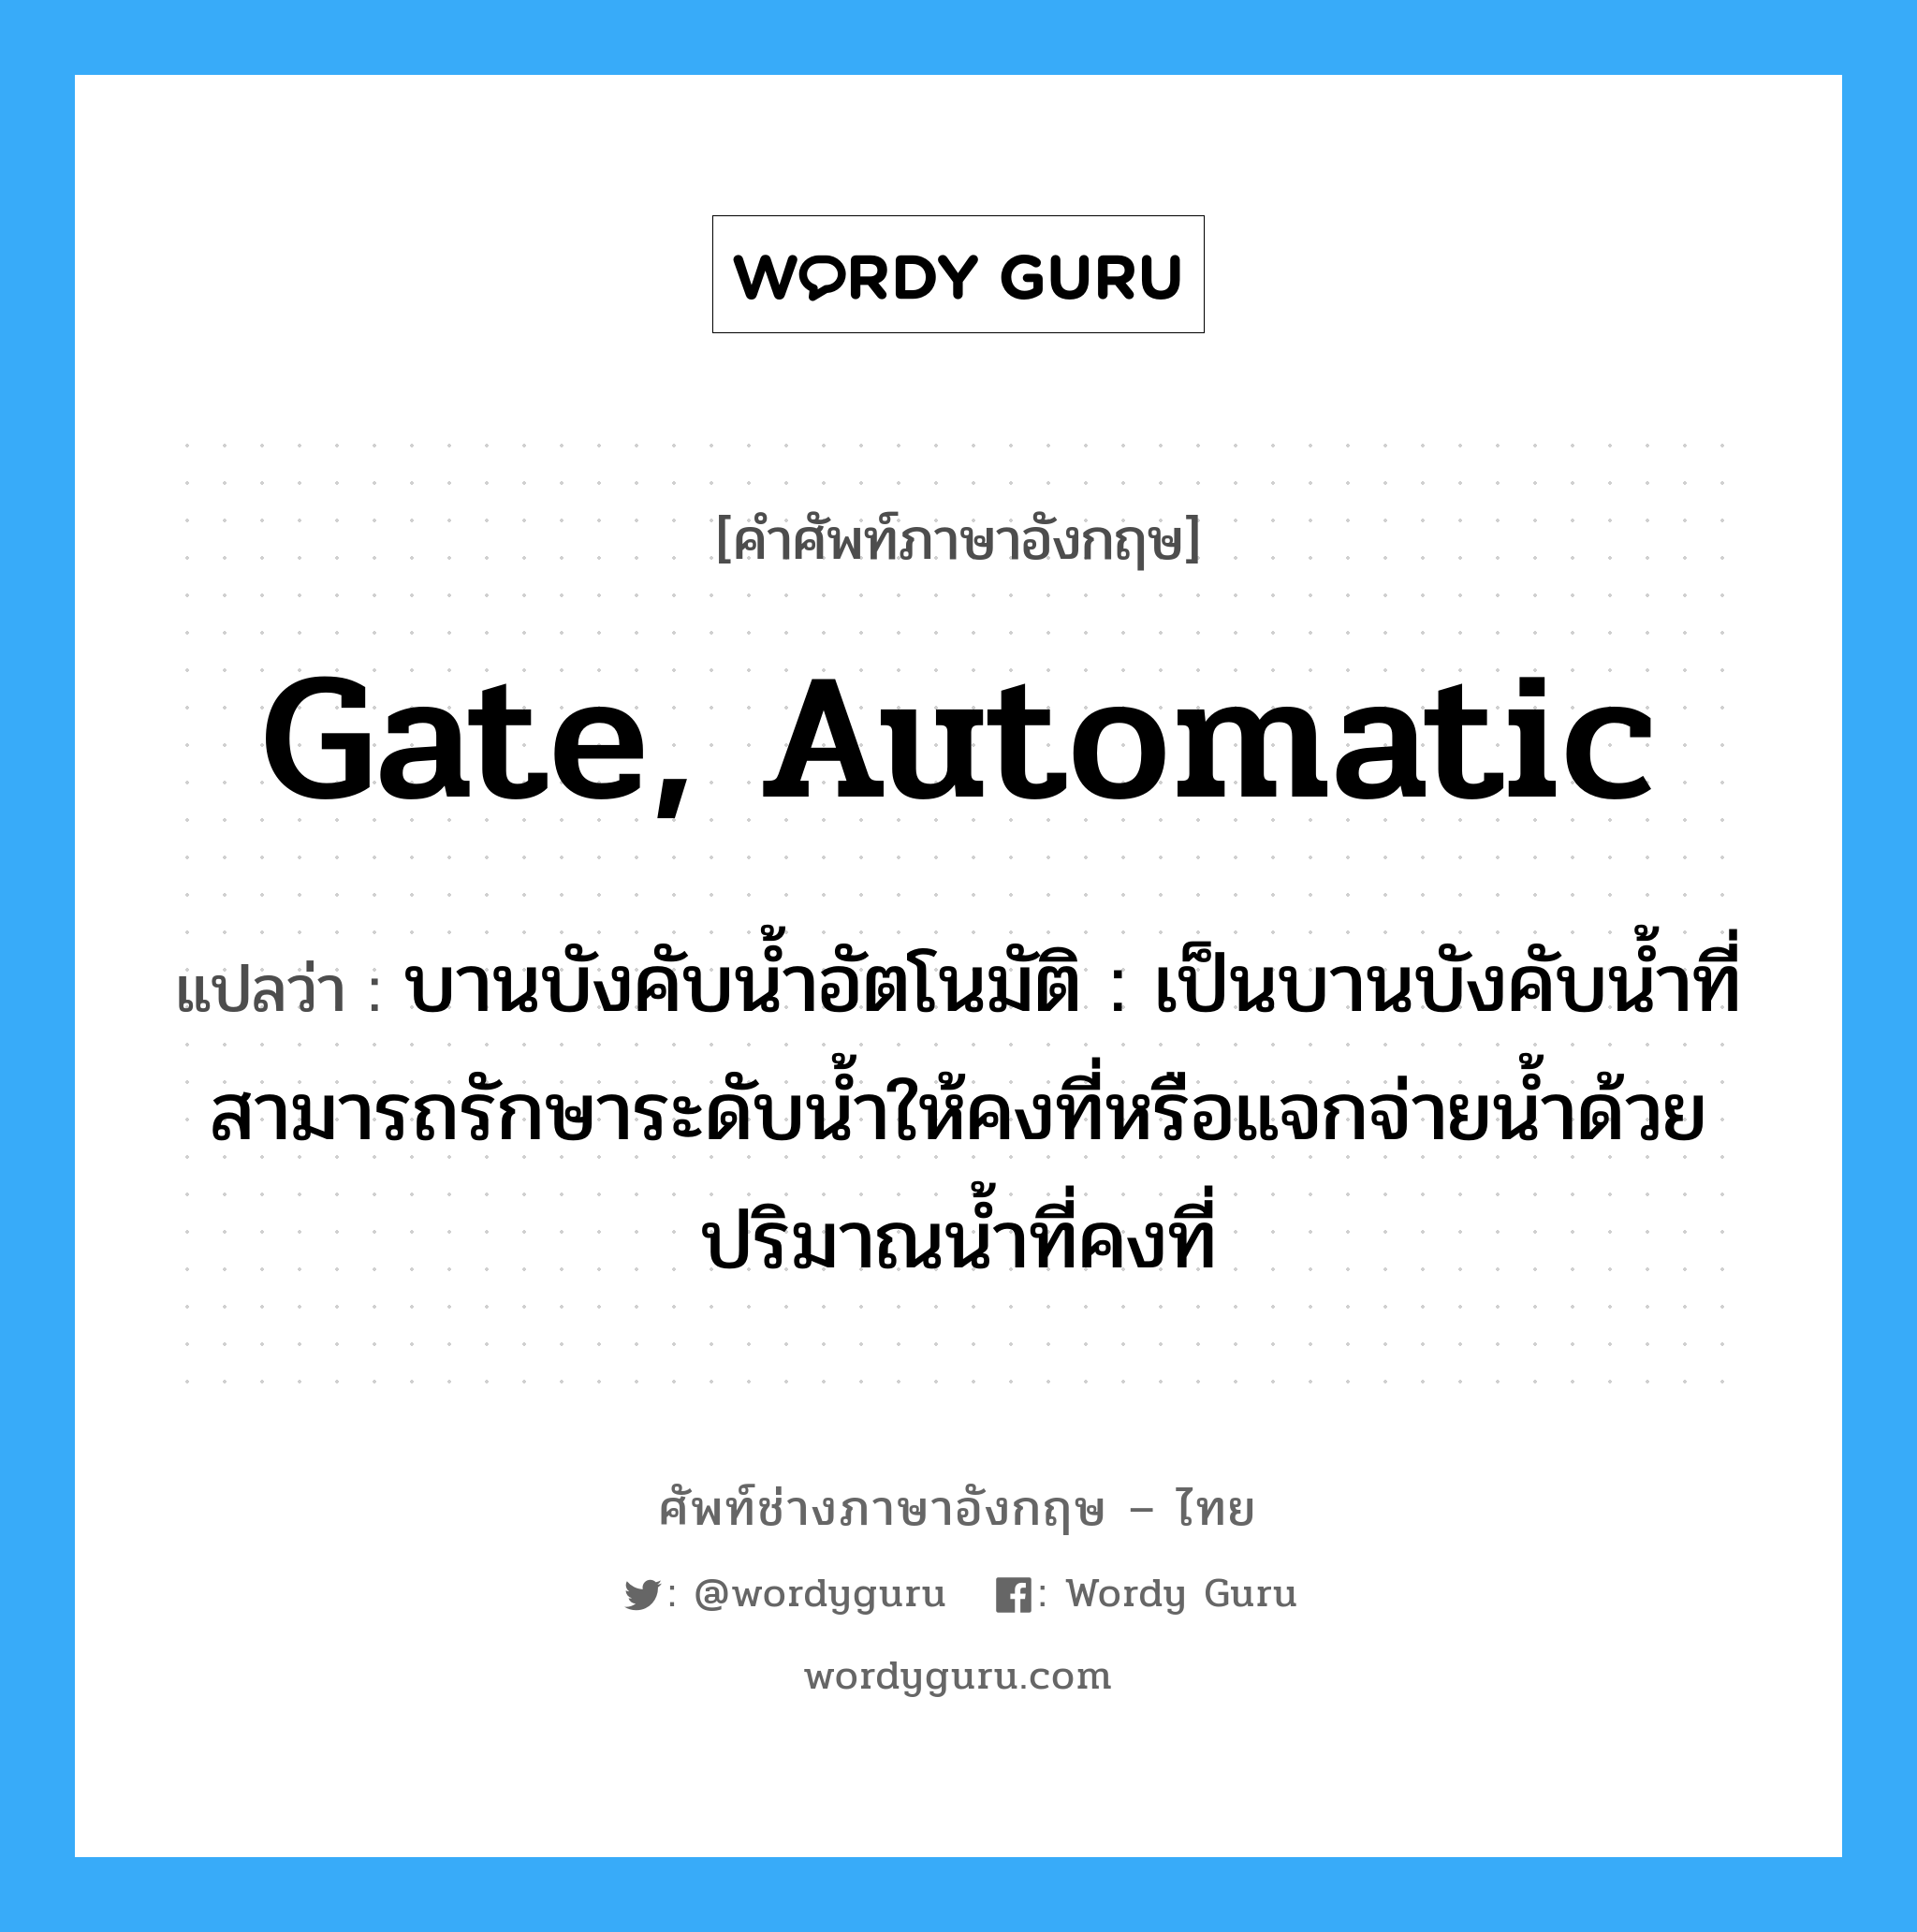 gate, automatic แปลว่า?, คำศัพท์ช่างภาษาอังกฤษ - ไทย gate, automatic คำศัพท์ภาษาอังกฤษ gate, automatic แปลว่า บานบังคับน้ำอัตโนมัติ : เป็นบานบังคับน้ำที่สามารถรักษาระดับน้ำให้คงที่หรือแจกจ่ายน้ำด้วยปริมาณน้ำที่คงที่